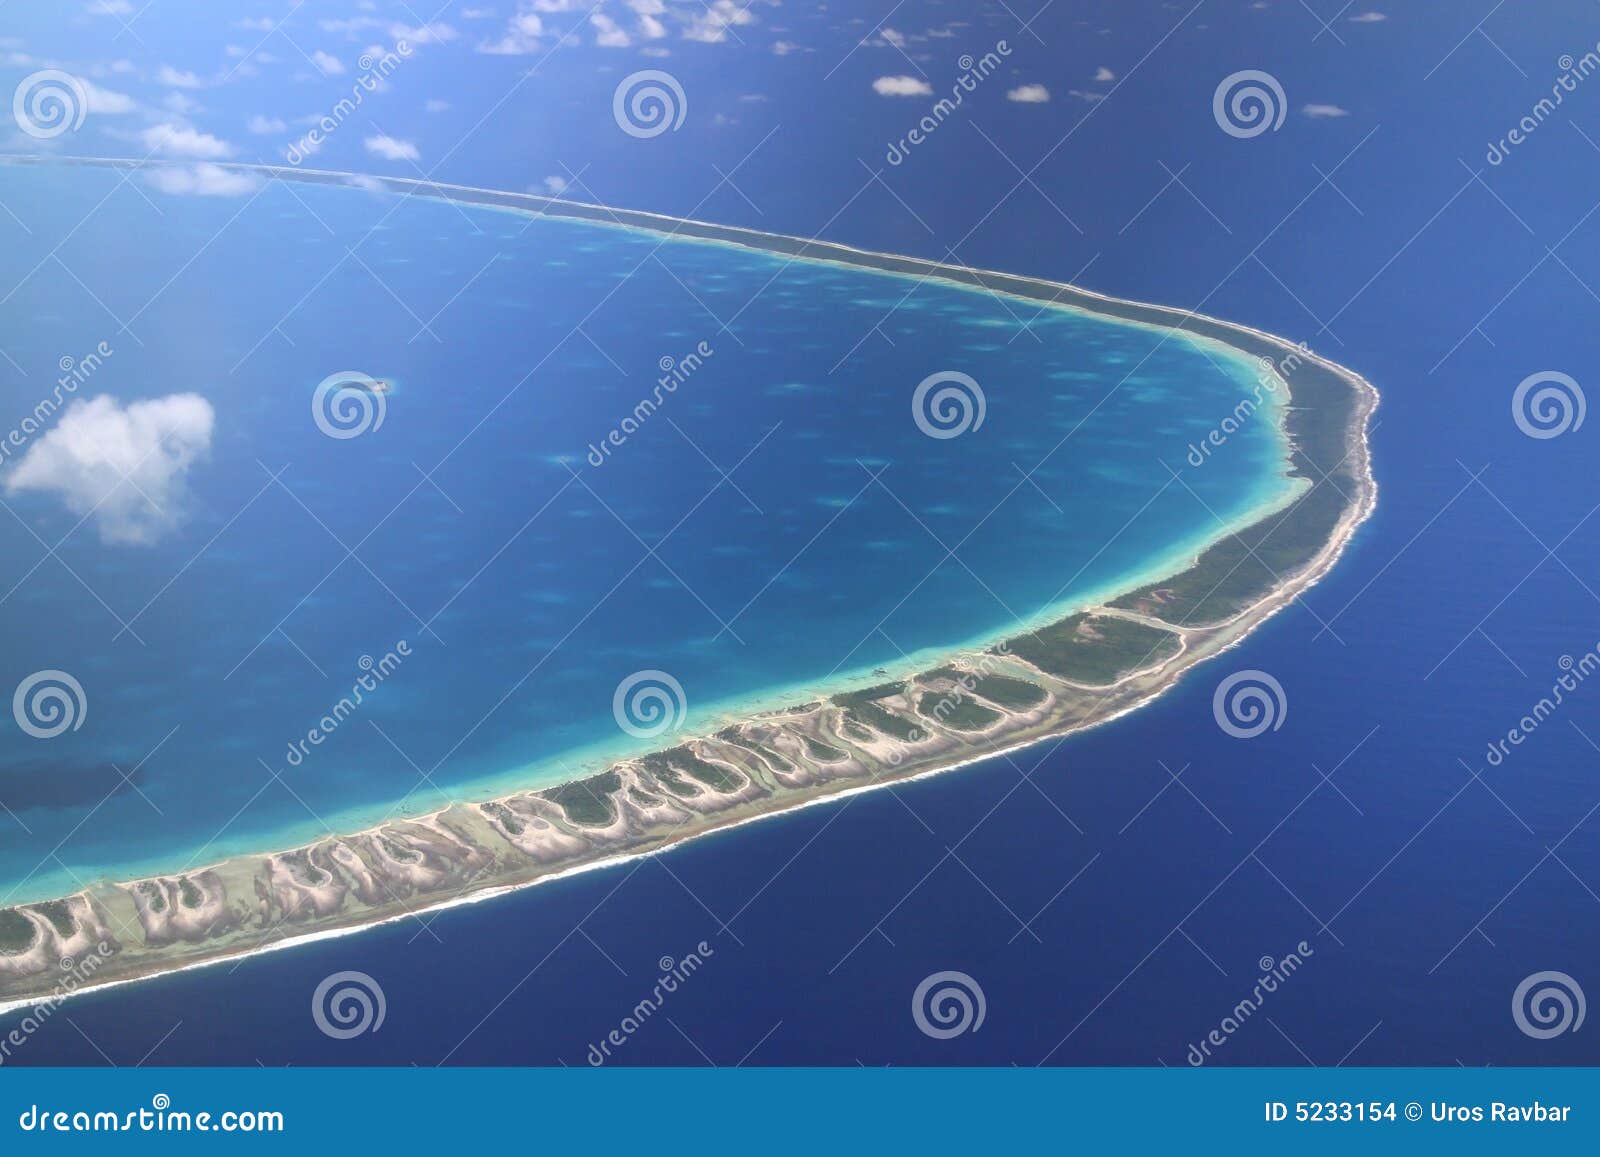 pacific atoll rangiroa